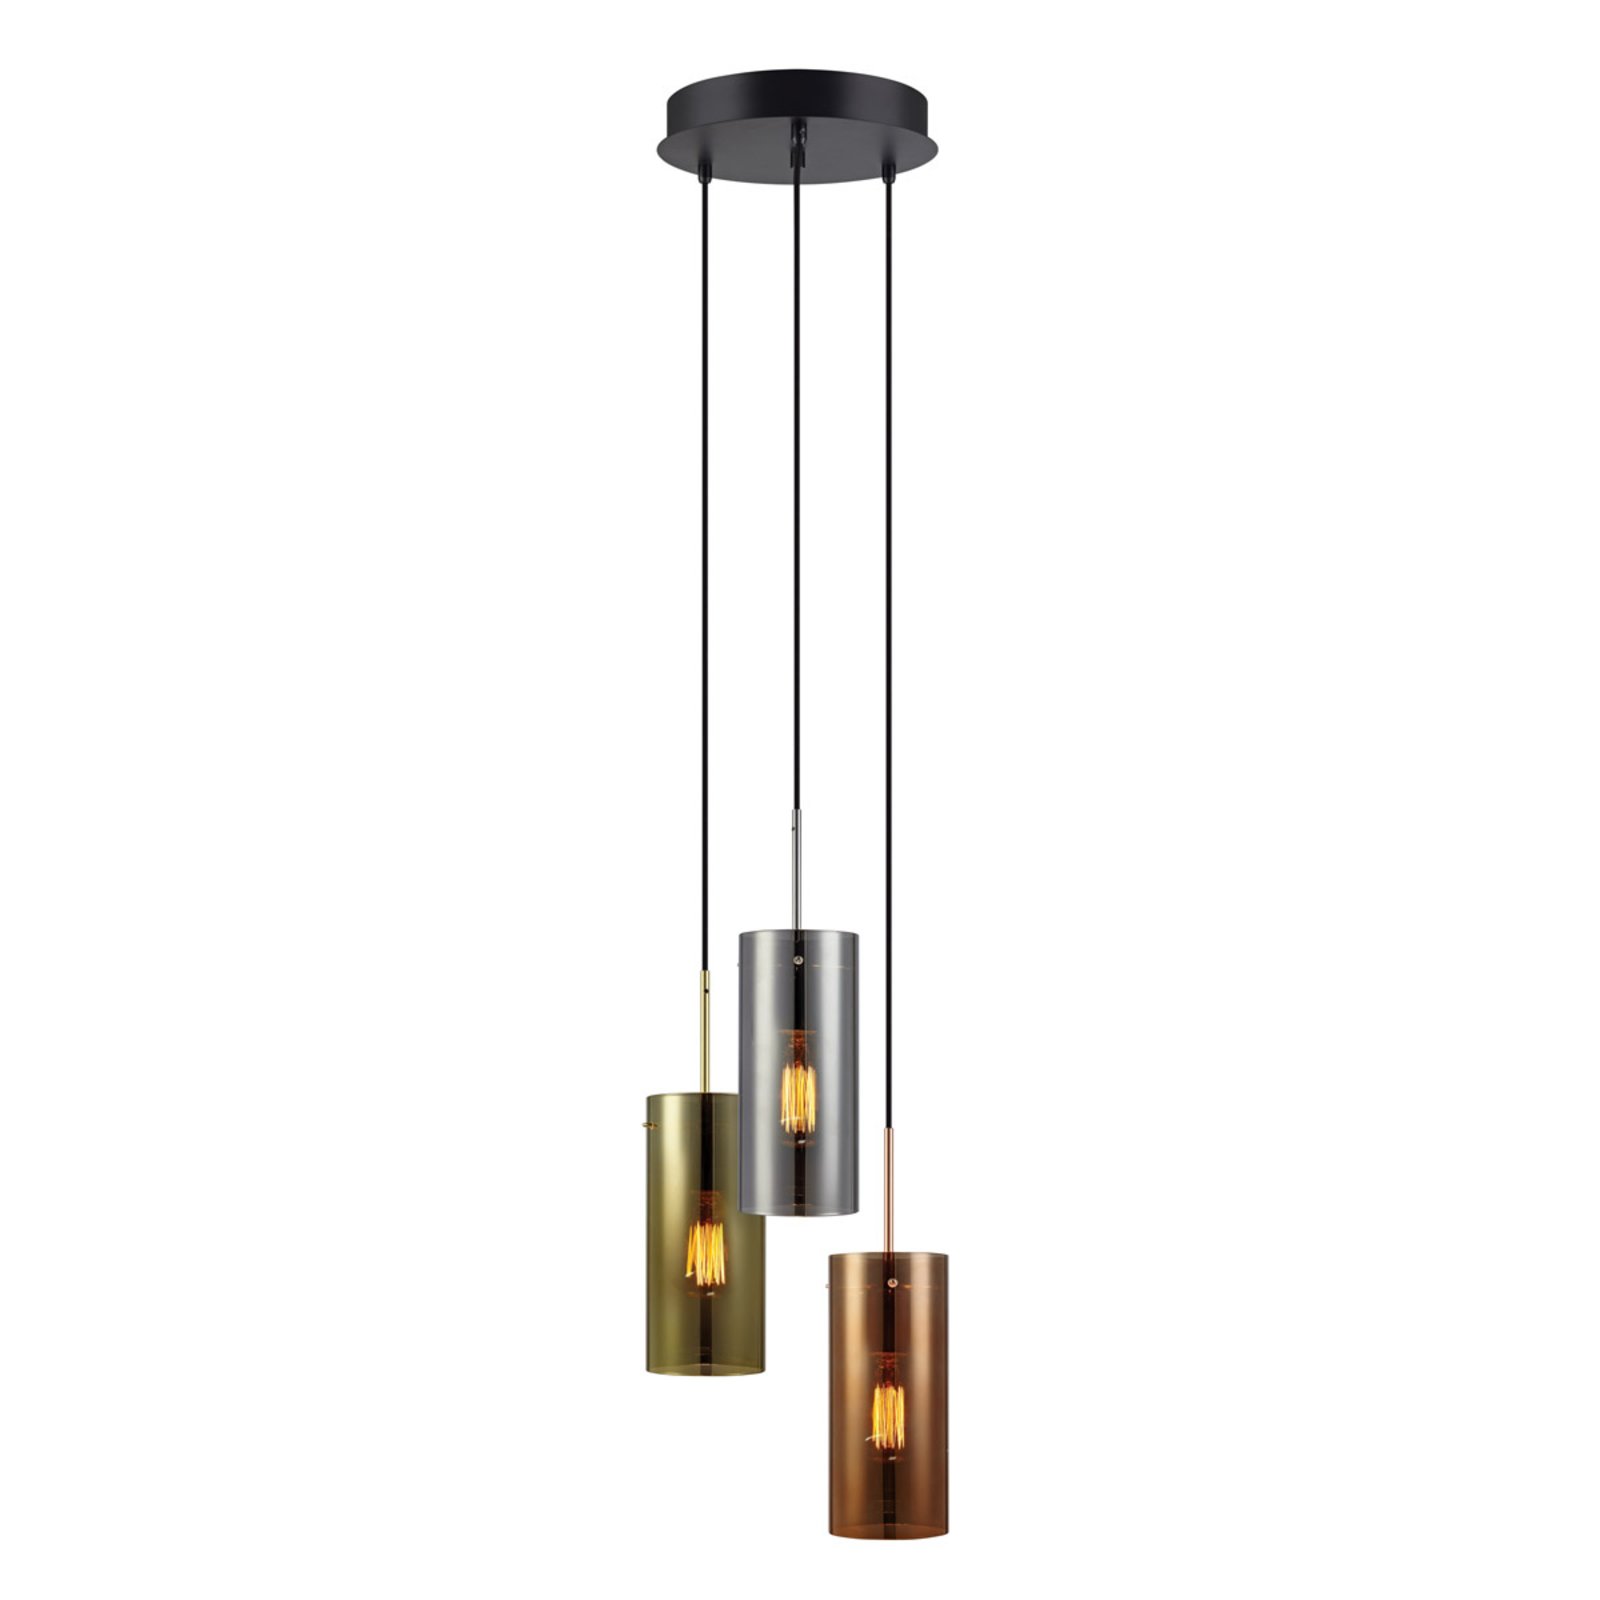 Storm - hanglamp met drie lampen in een kleurenmix